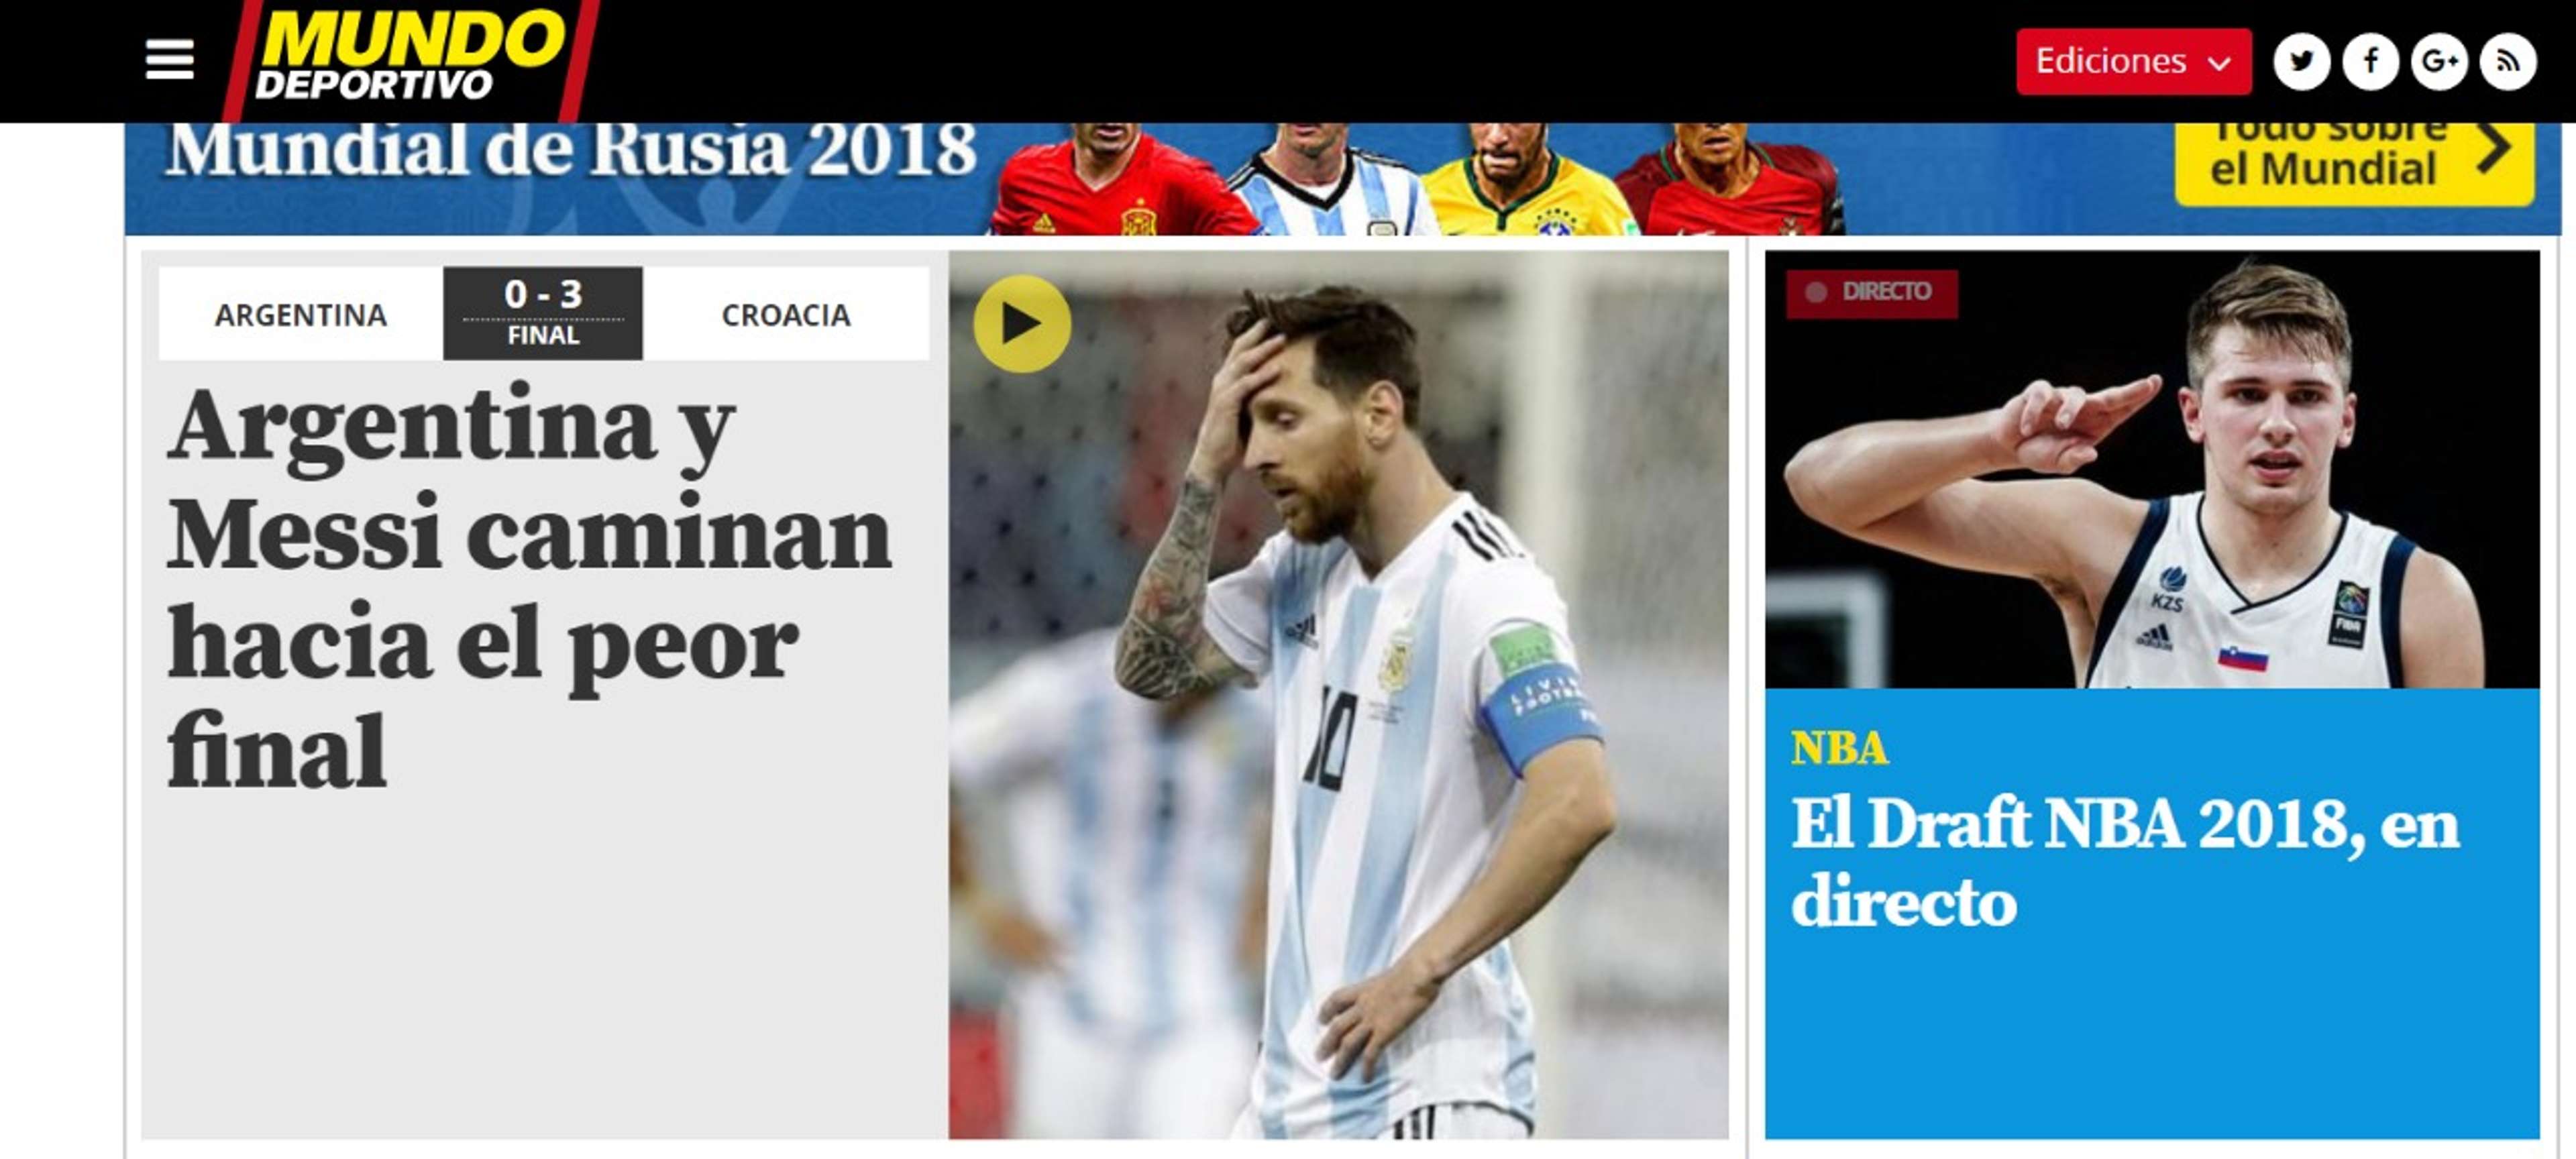 Imprensa mundial repercute derrota da Argentina